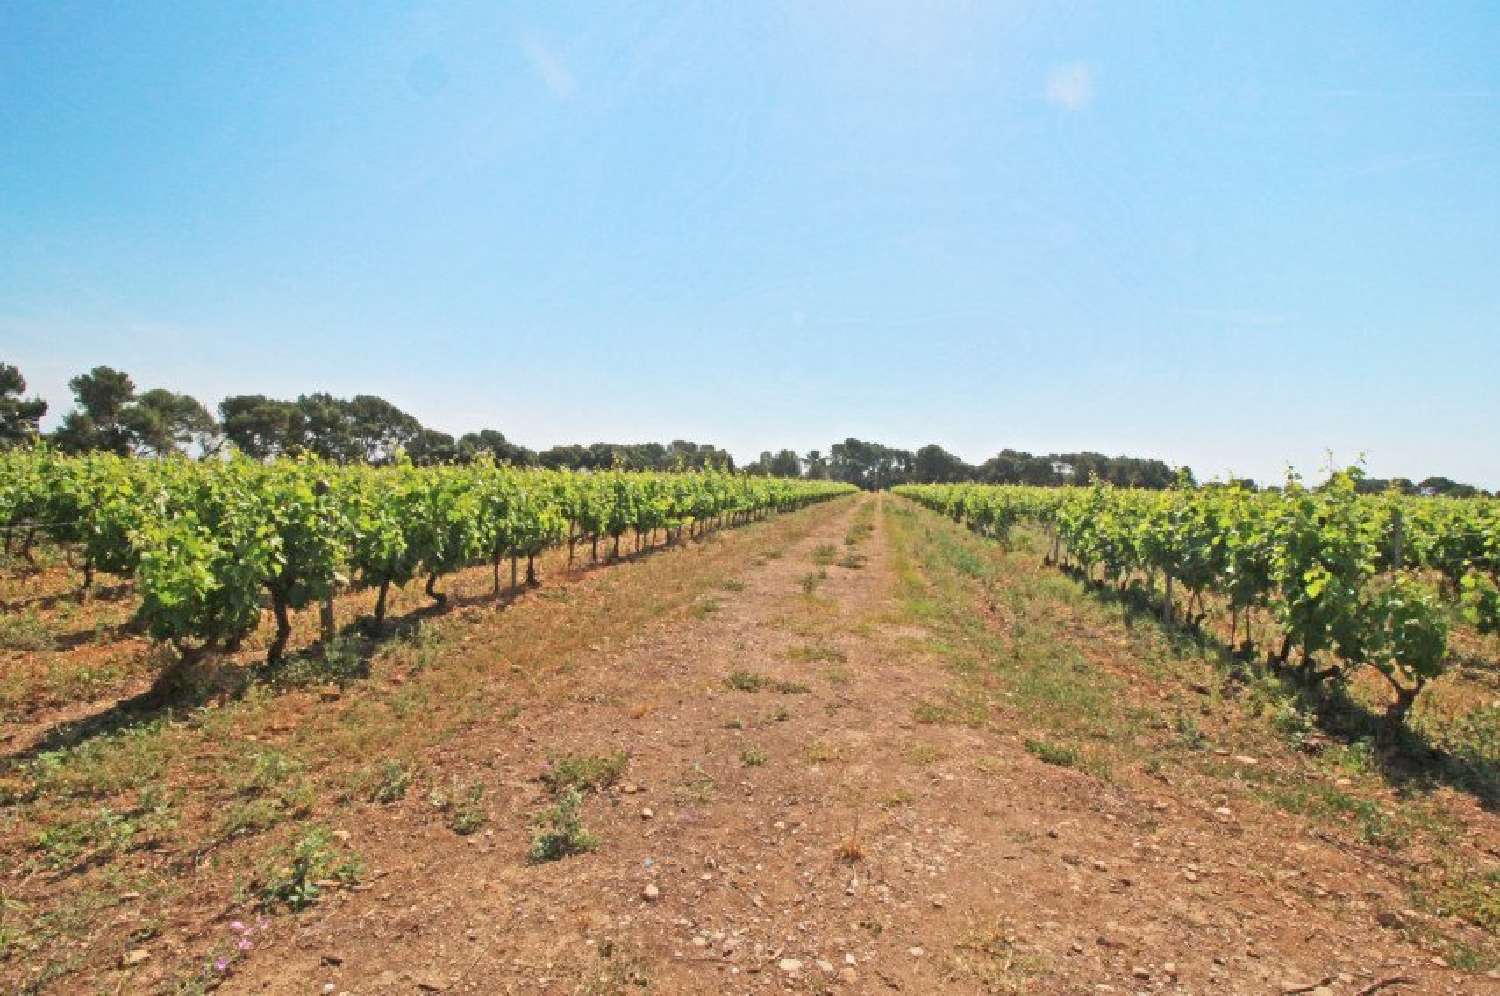  à vendre vignoble Narbonne Aude 2